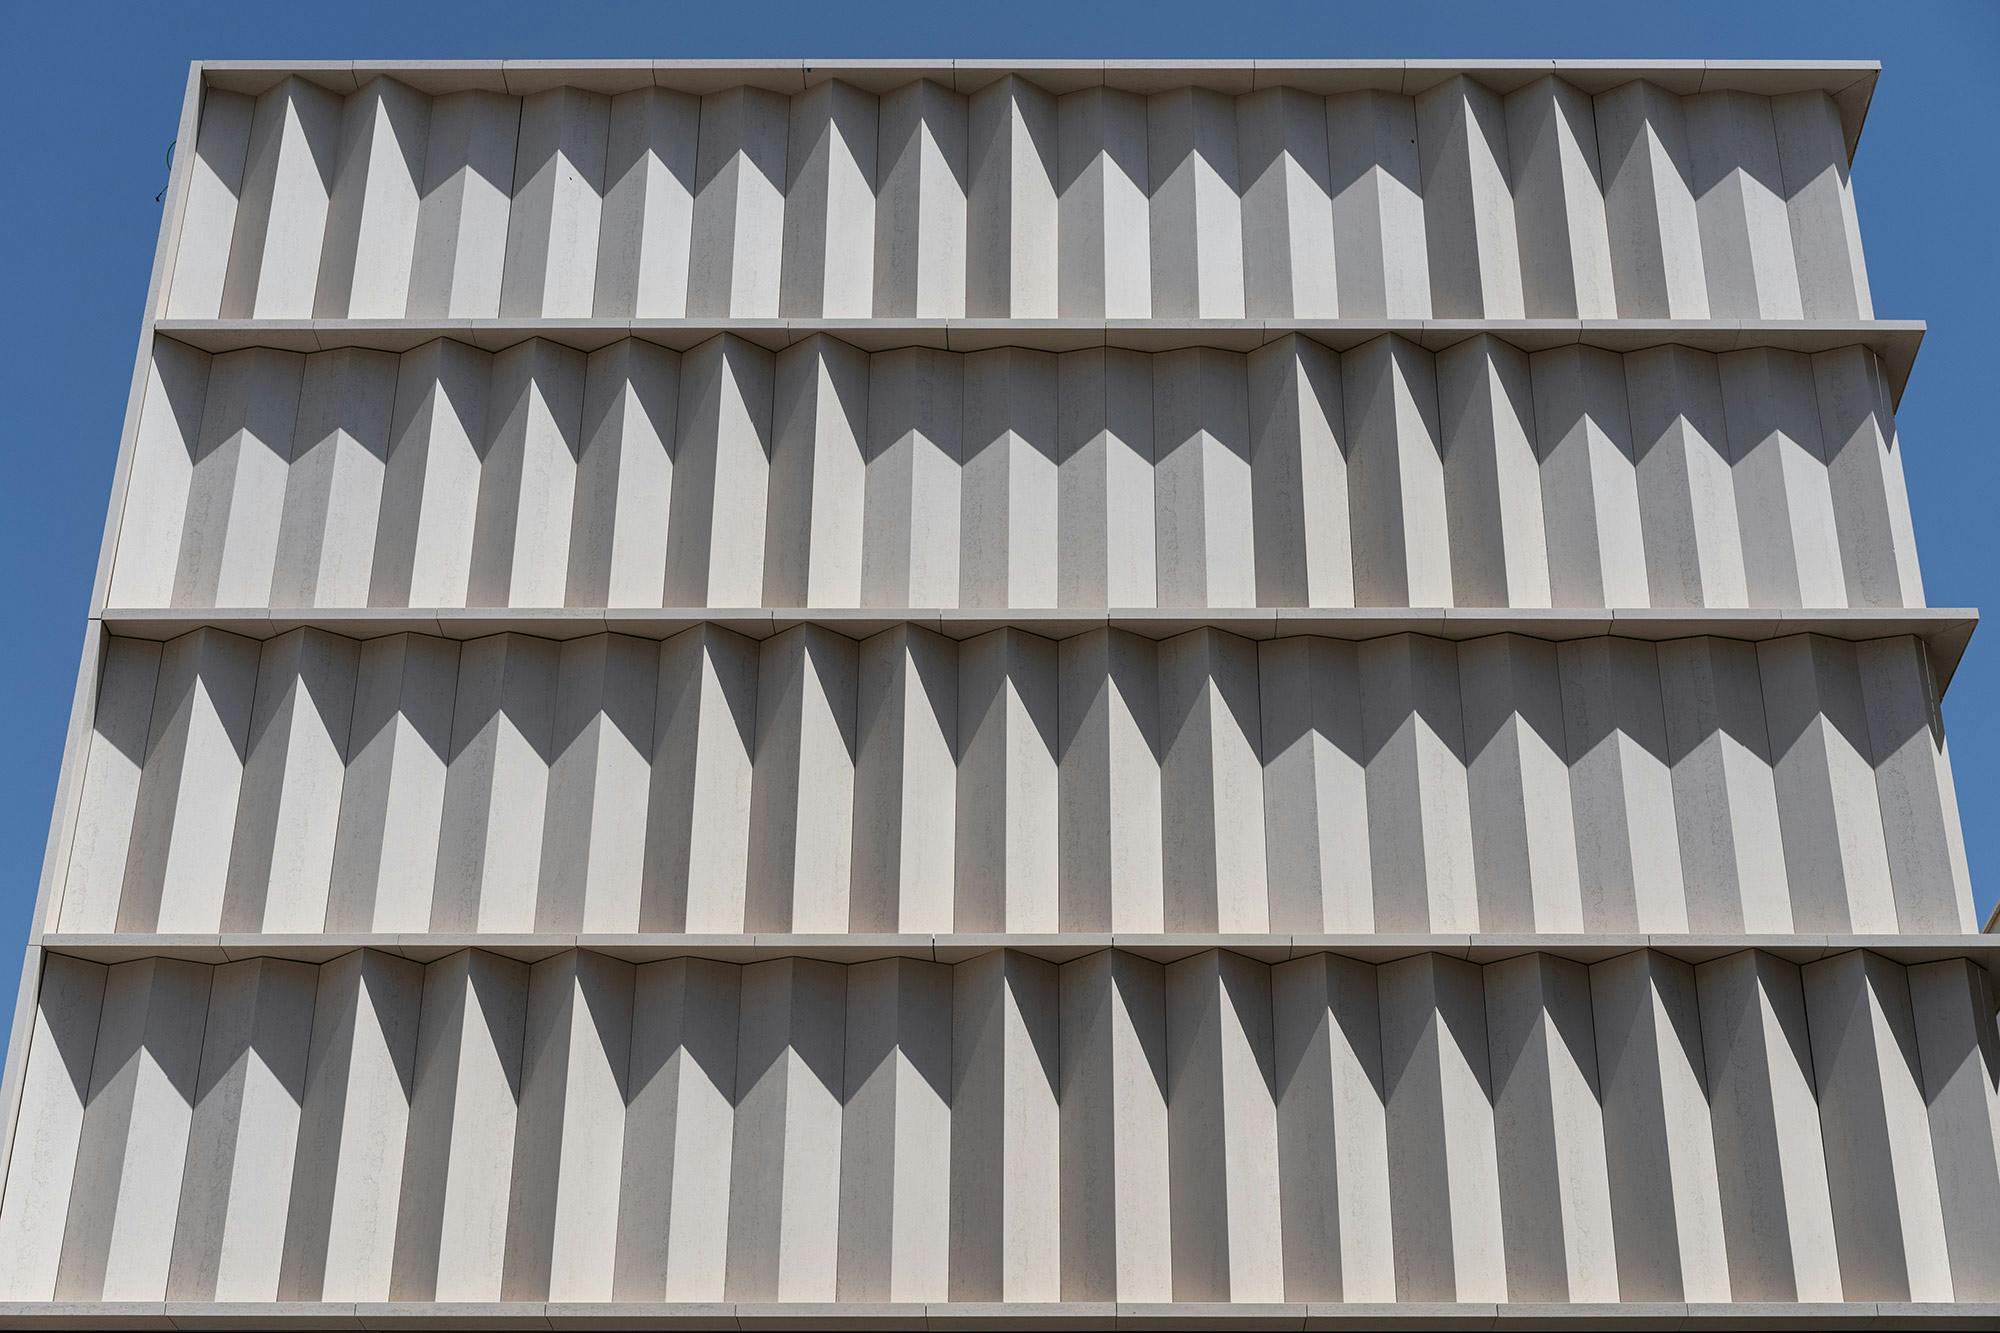 Numéro d'image 38 de la section actuelle de Curved forms in a façade that recalls the Brutalist style of the Pátio Rebouças building in São Paulo de Cosentino France